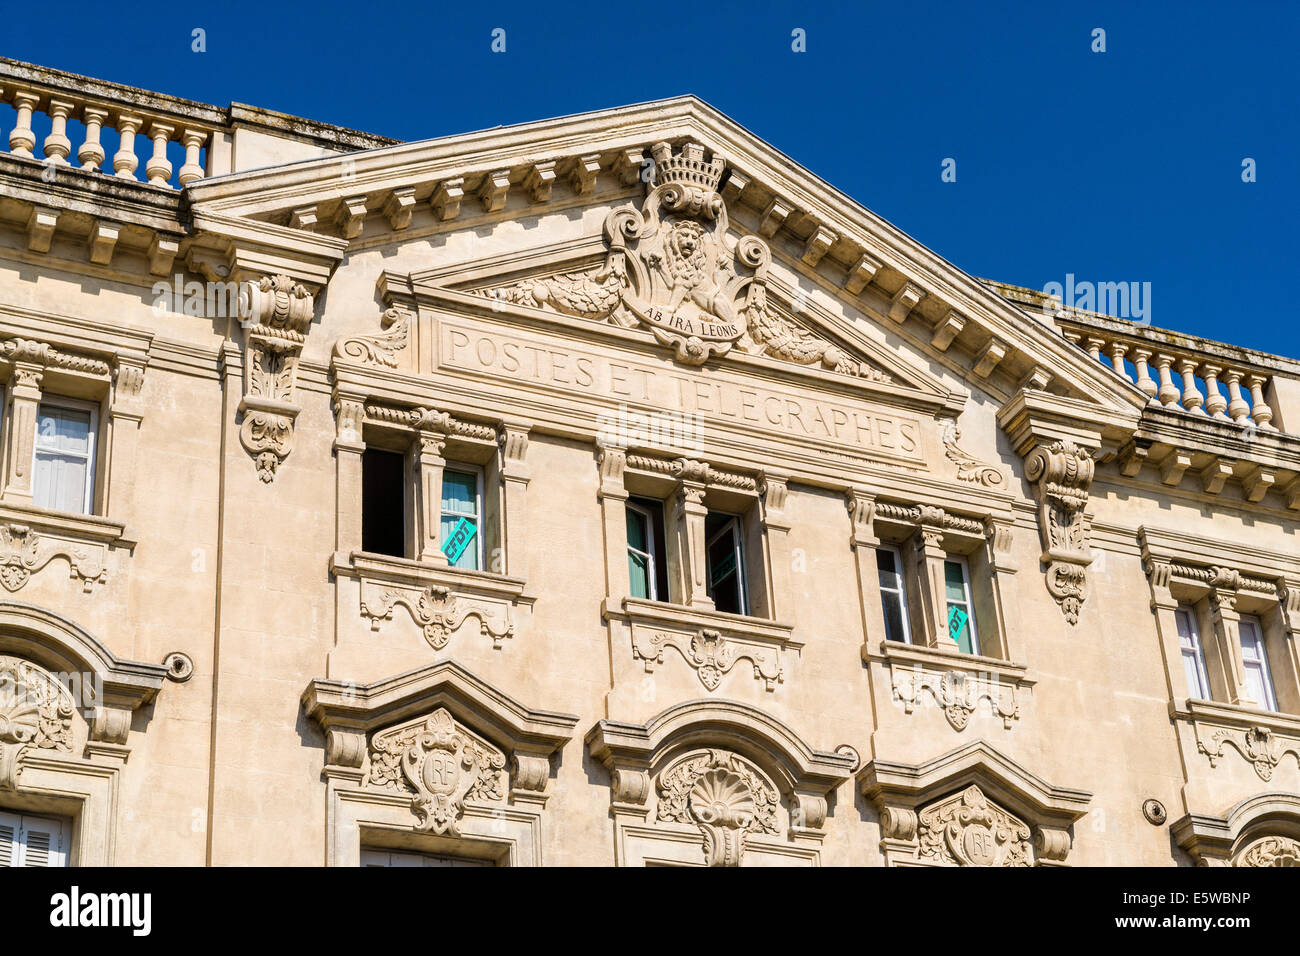 Bureau de poste Postes et Télégraphes, Place de la République, Arles, France. JMH6273 Banque D'Images